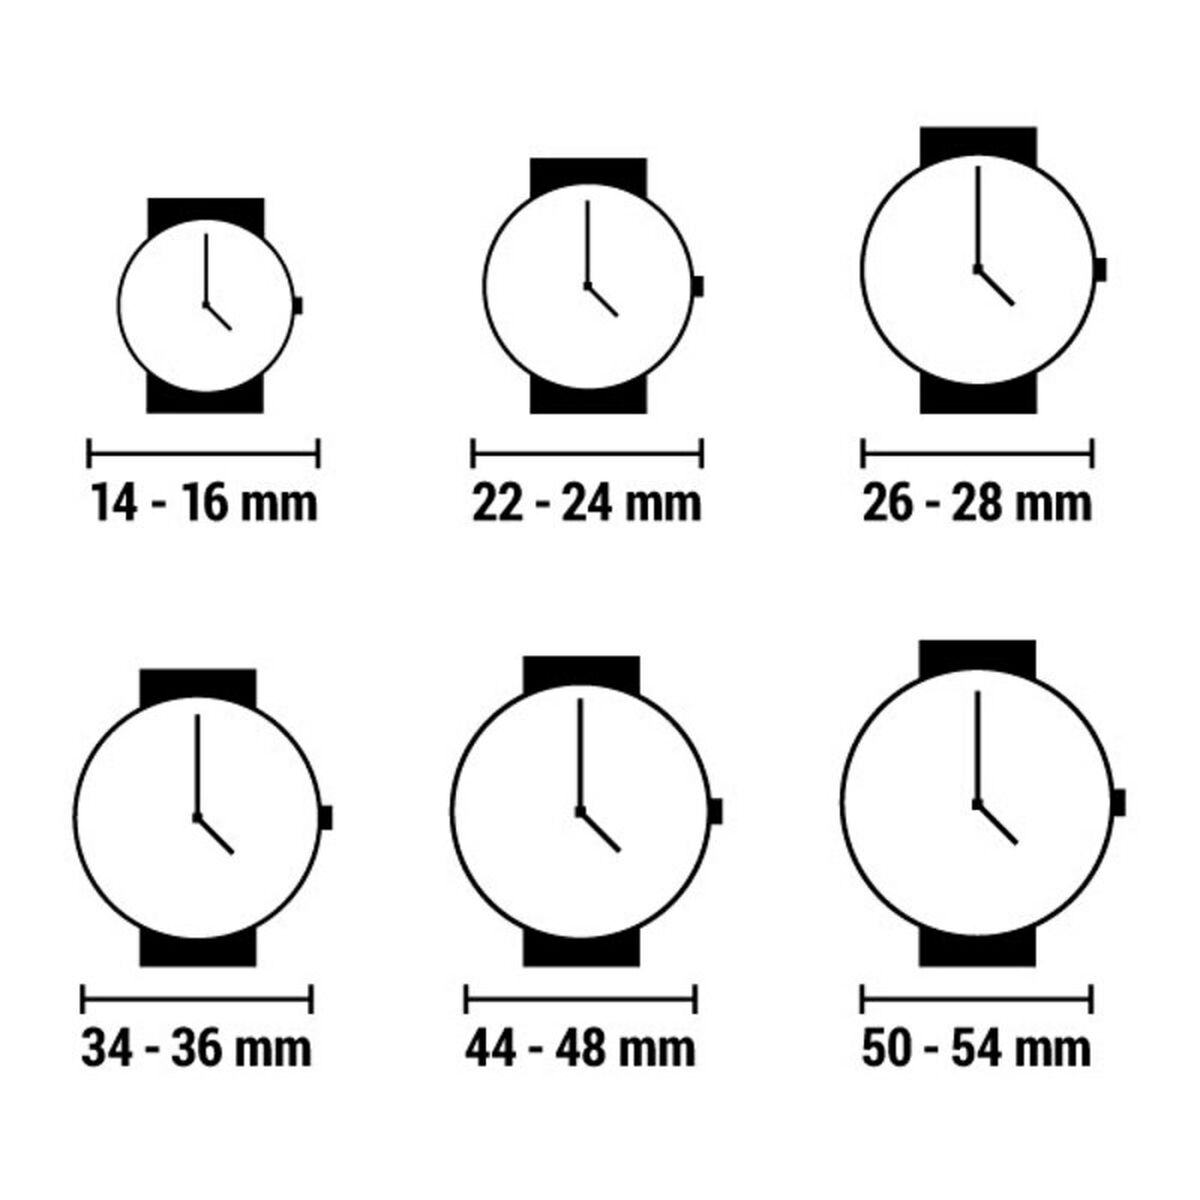 Horloge Heren Arabians DBH2188D (Ø 39 mm)